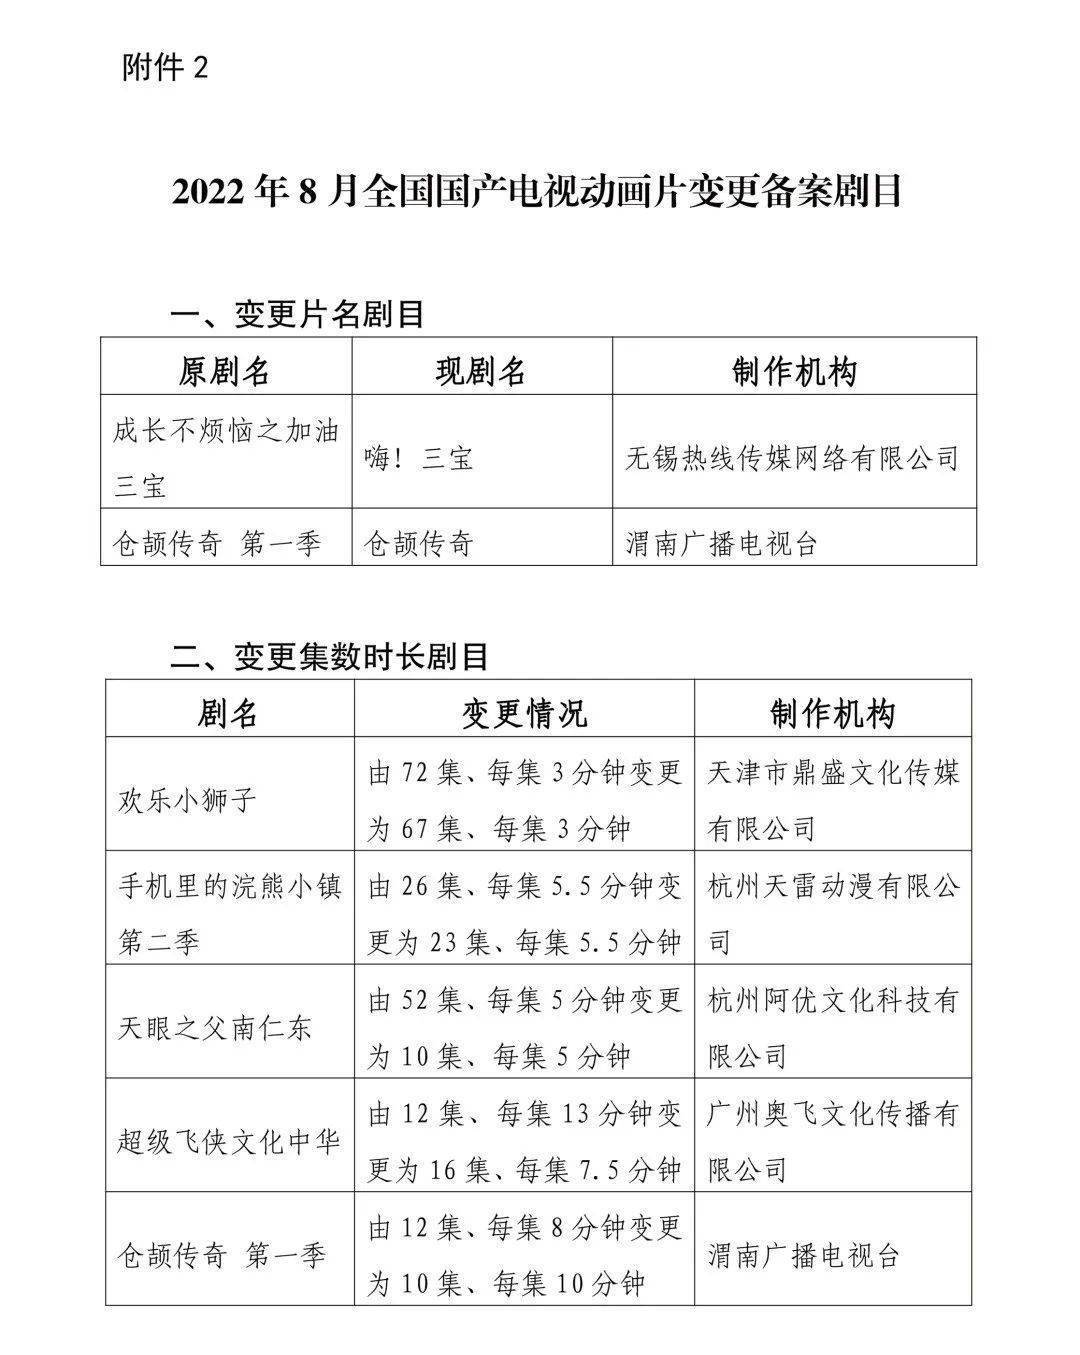 广电总局公布2022年8月全国国产电视动画片制作备案公示